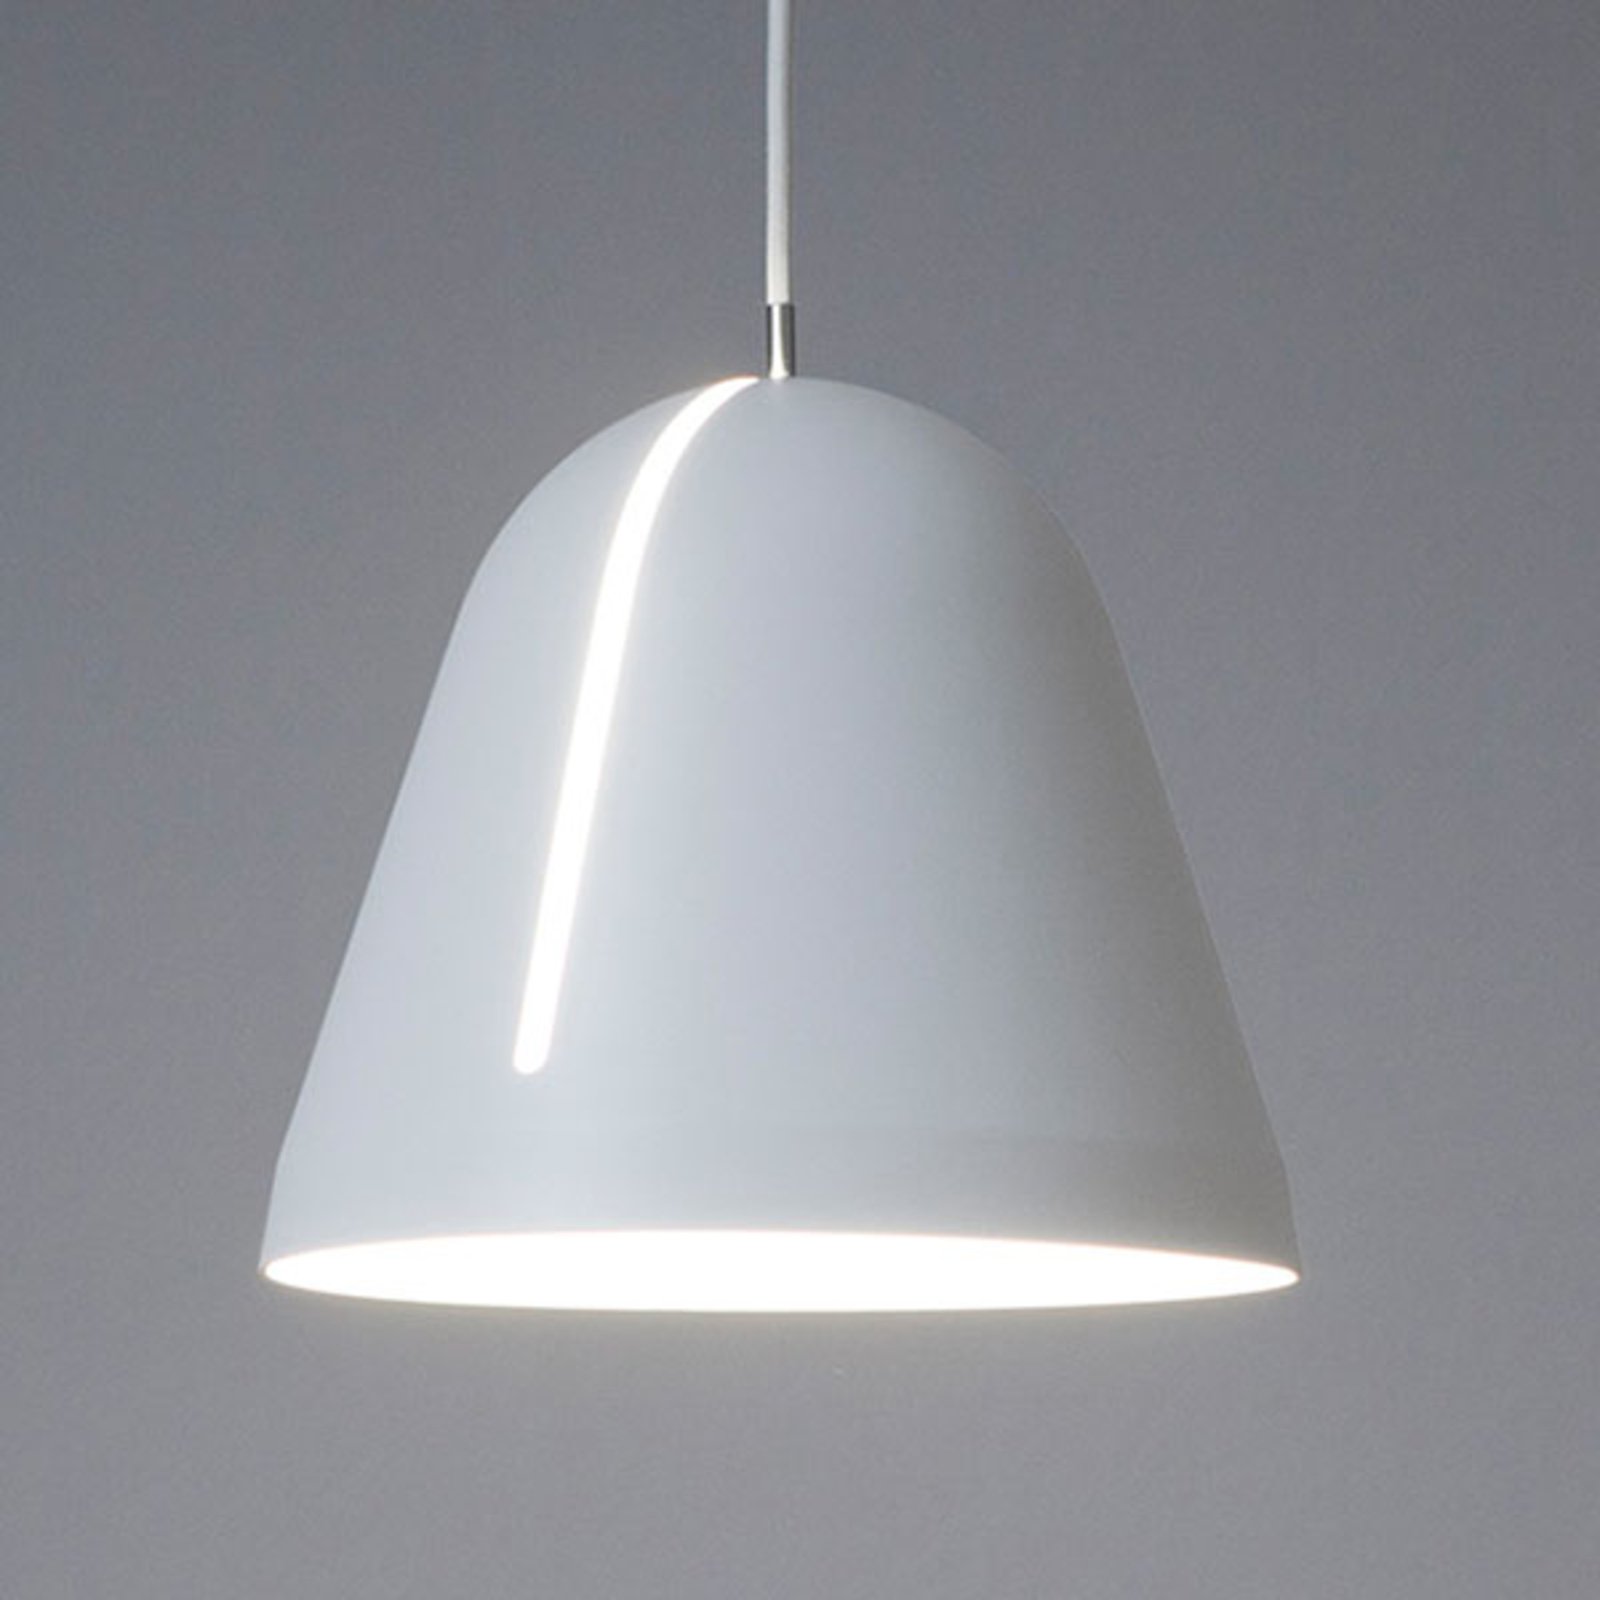 Nyta Tilt pendant light, white 3 m cable, white